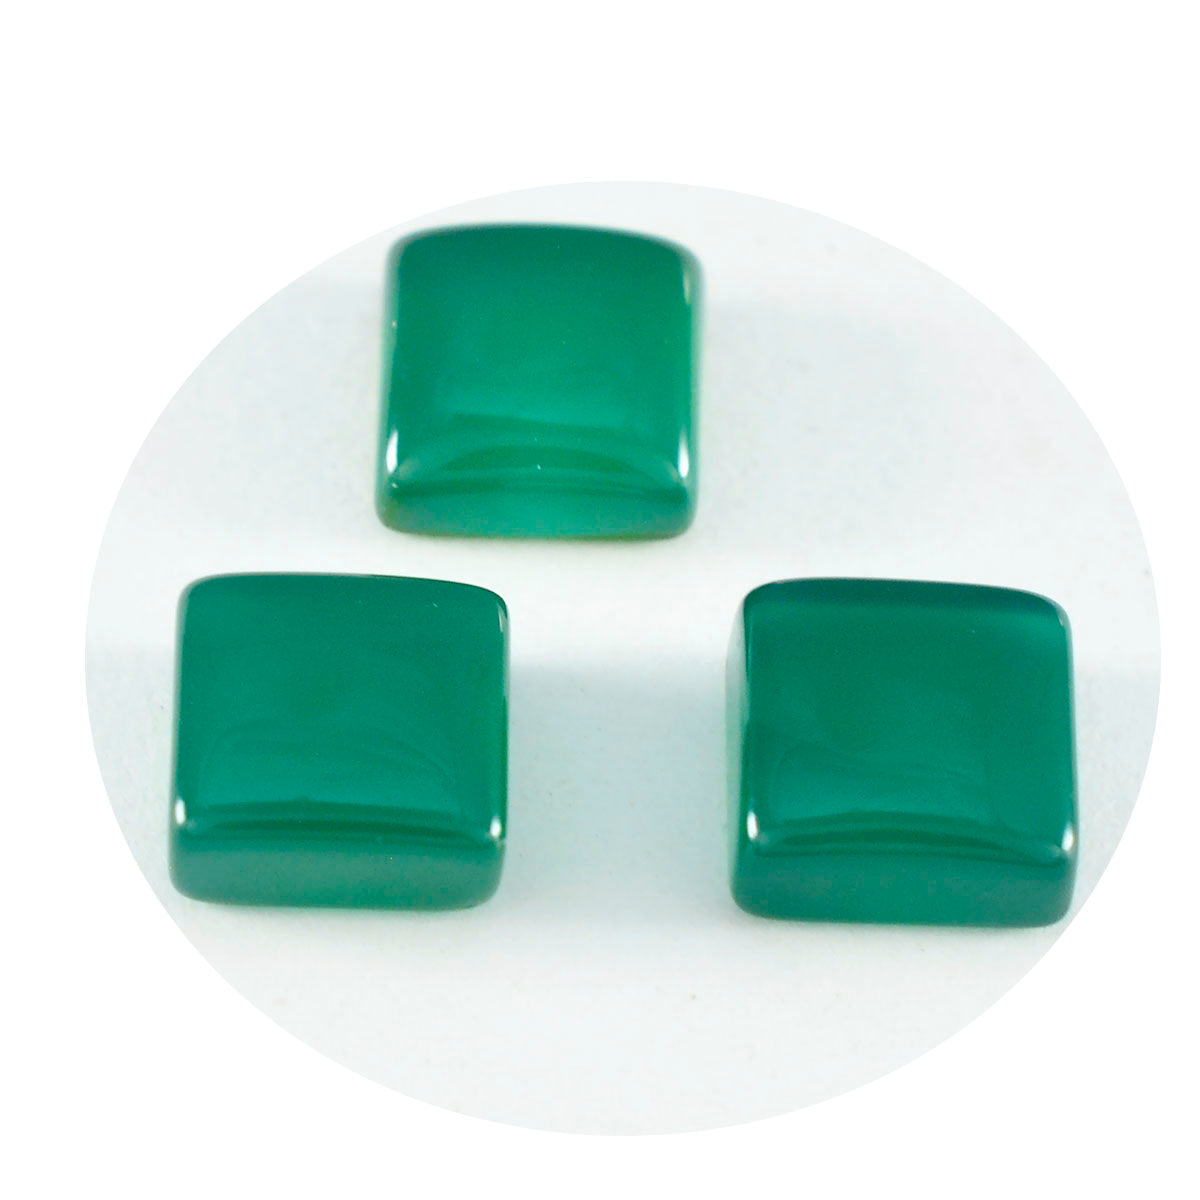 Riyogems 1 Stück grüner Onyx-Cabochon, 13 x 13 mm, quadratische Form, schön aussehender, hochwertiger loser Edelstein